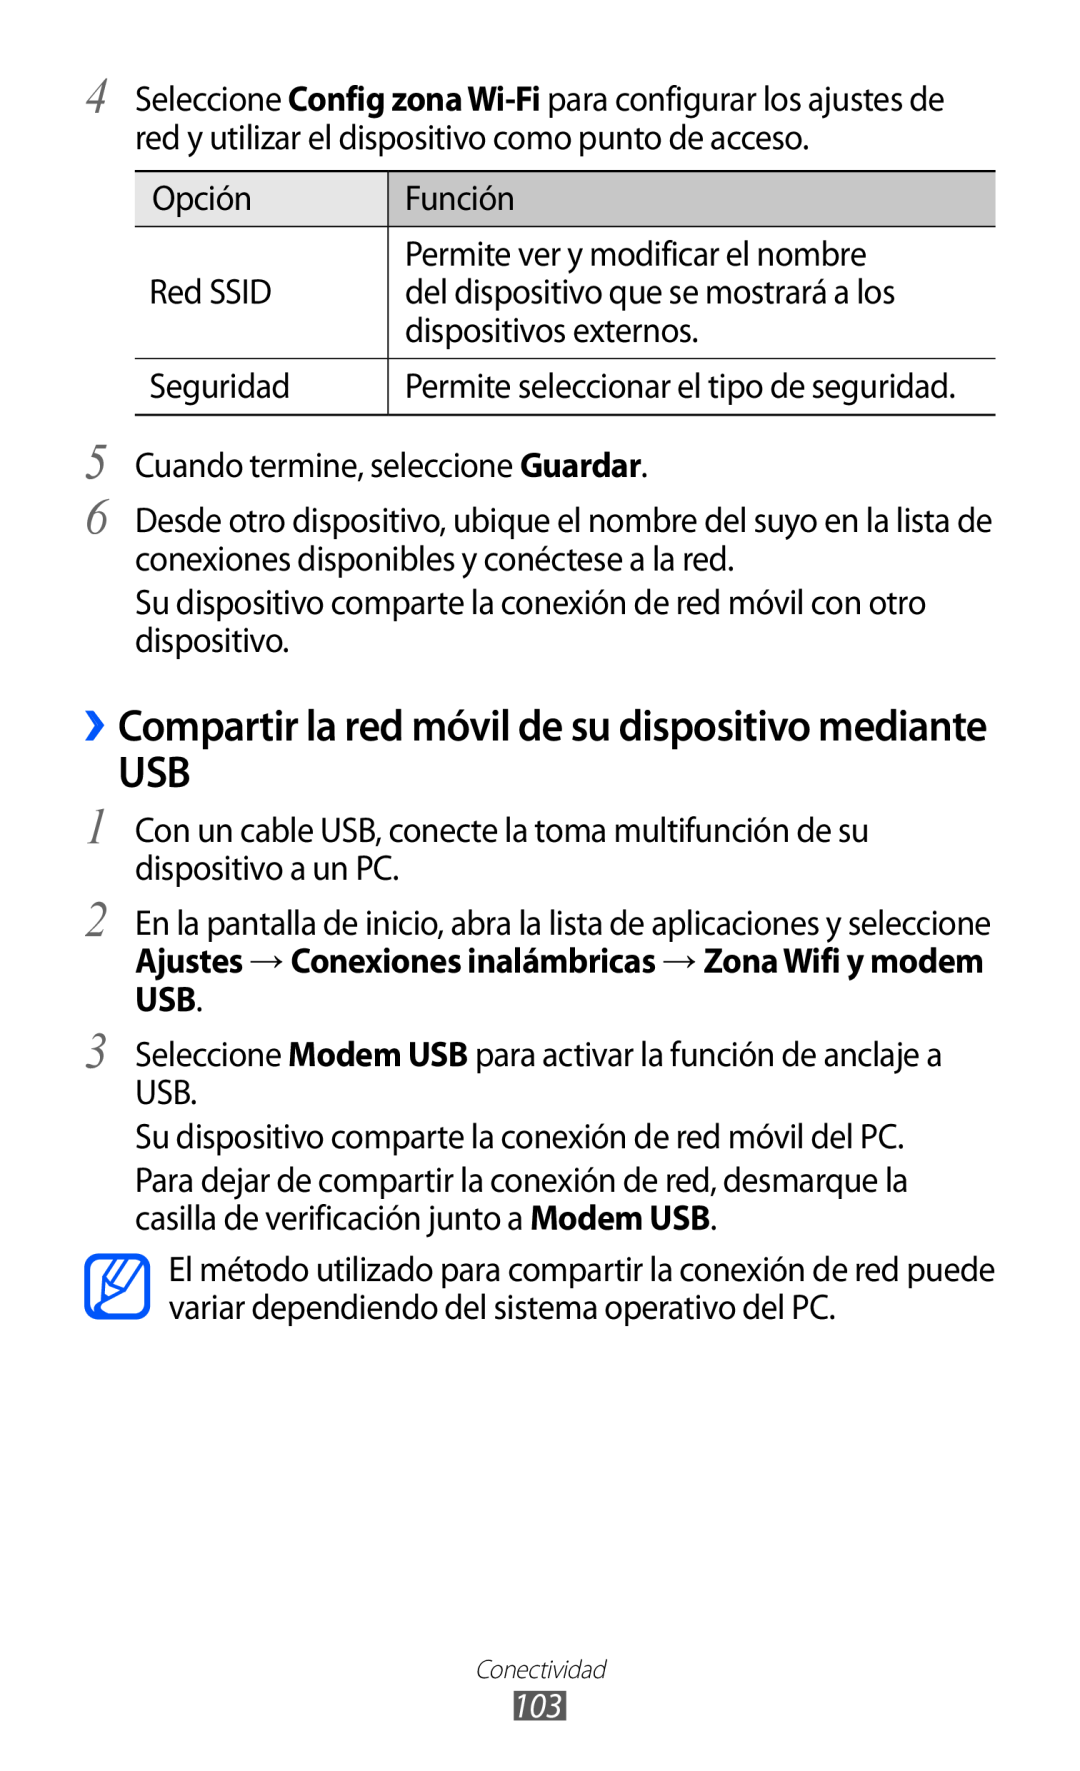 Samsung GT-S6500ZYDTPH manual ››Compartir la red móvil de su dispositivo mediante, Permite seleccionar el tipo de seguridad 